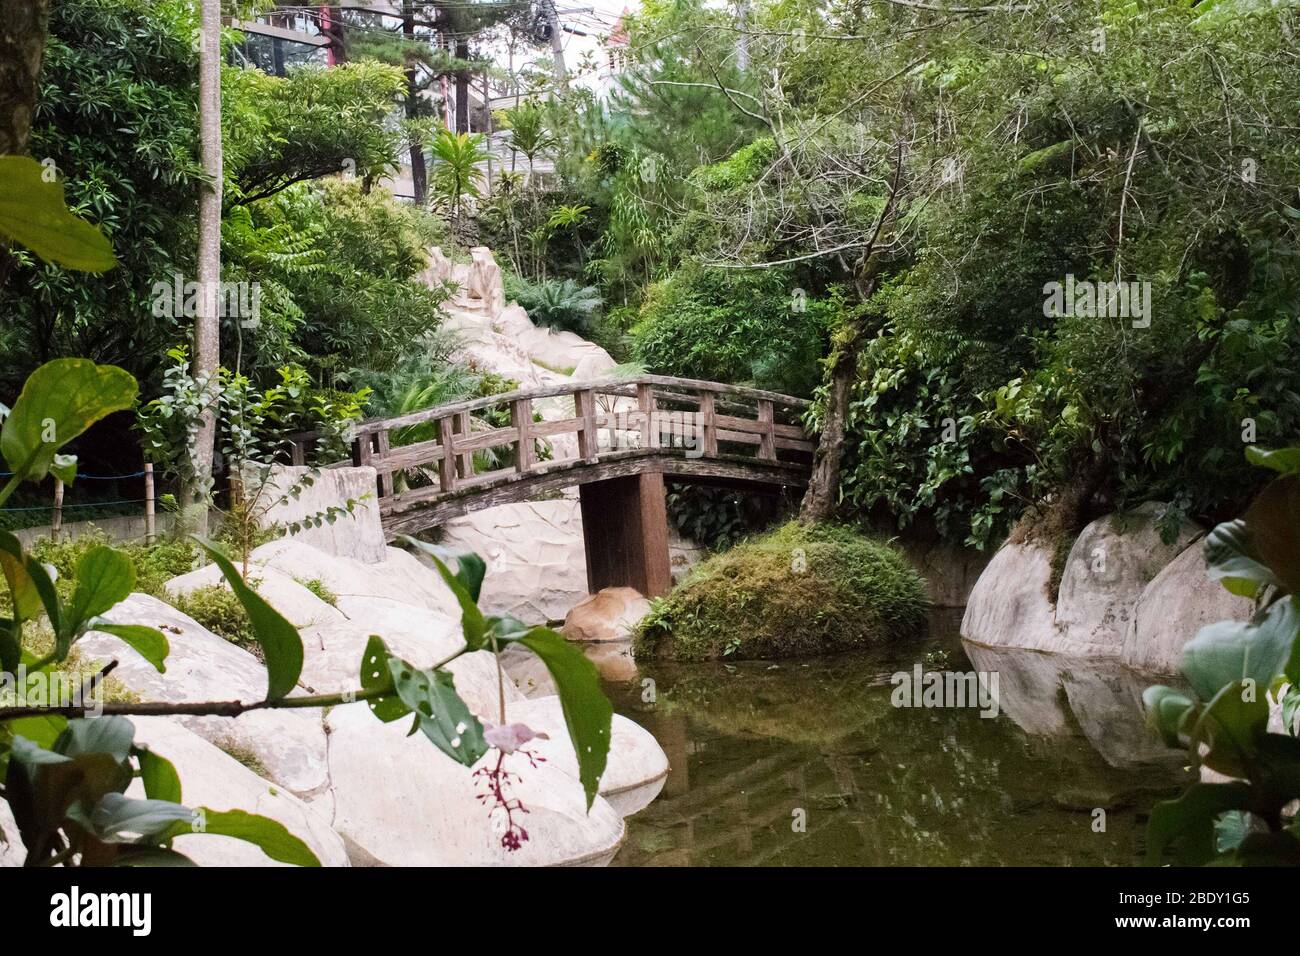 A small wooden bridge crossing a small lake at the zen garden Stock Photo